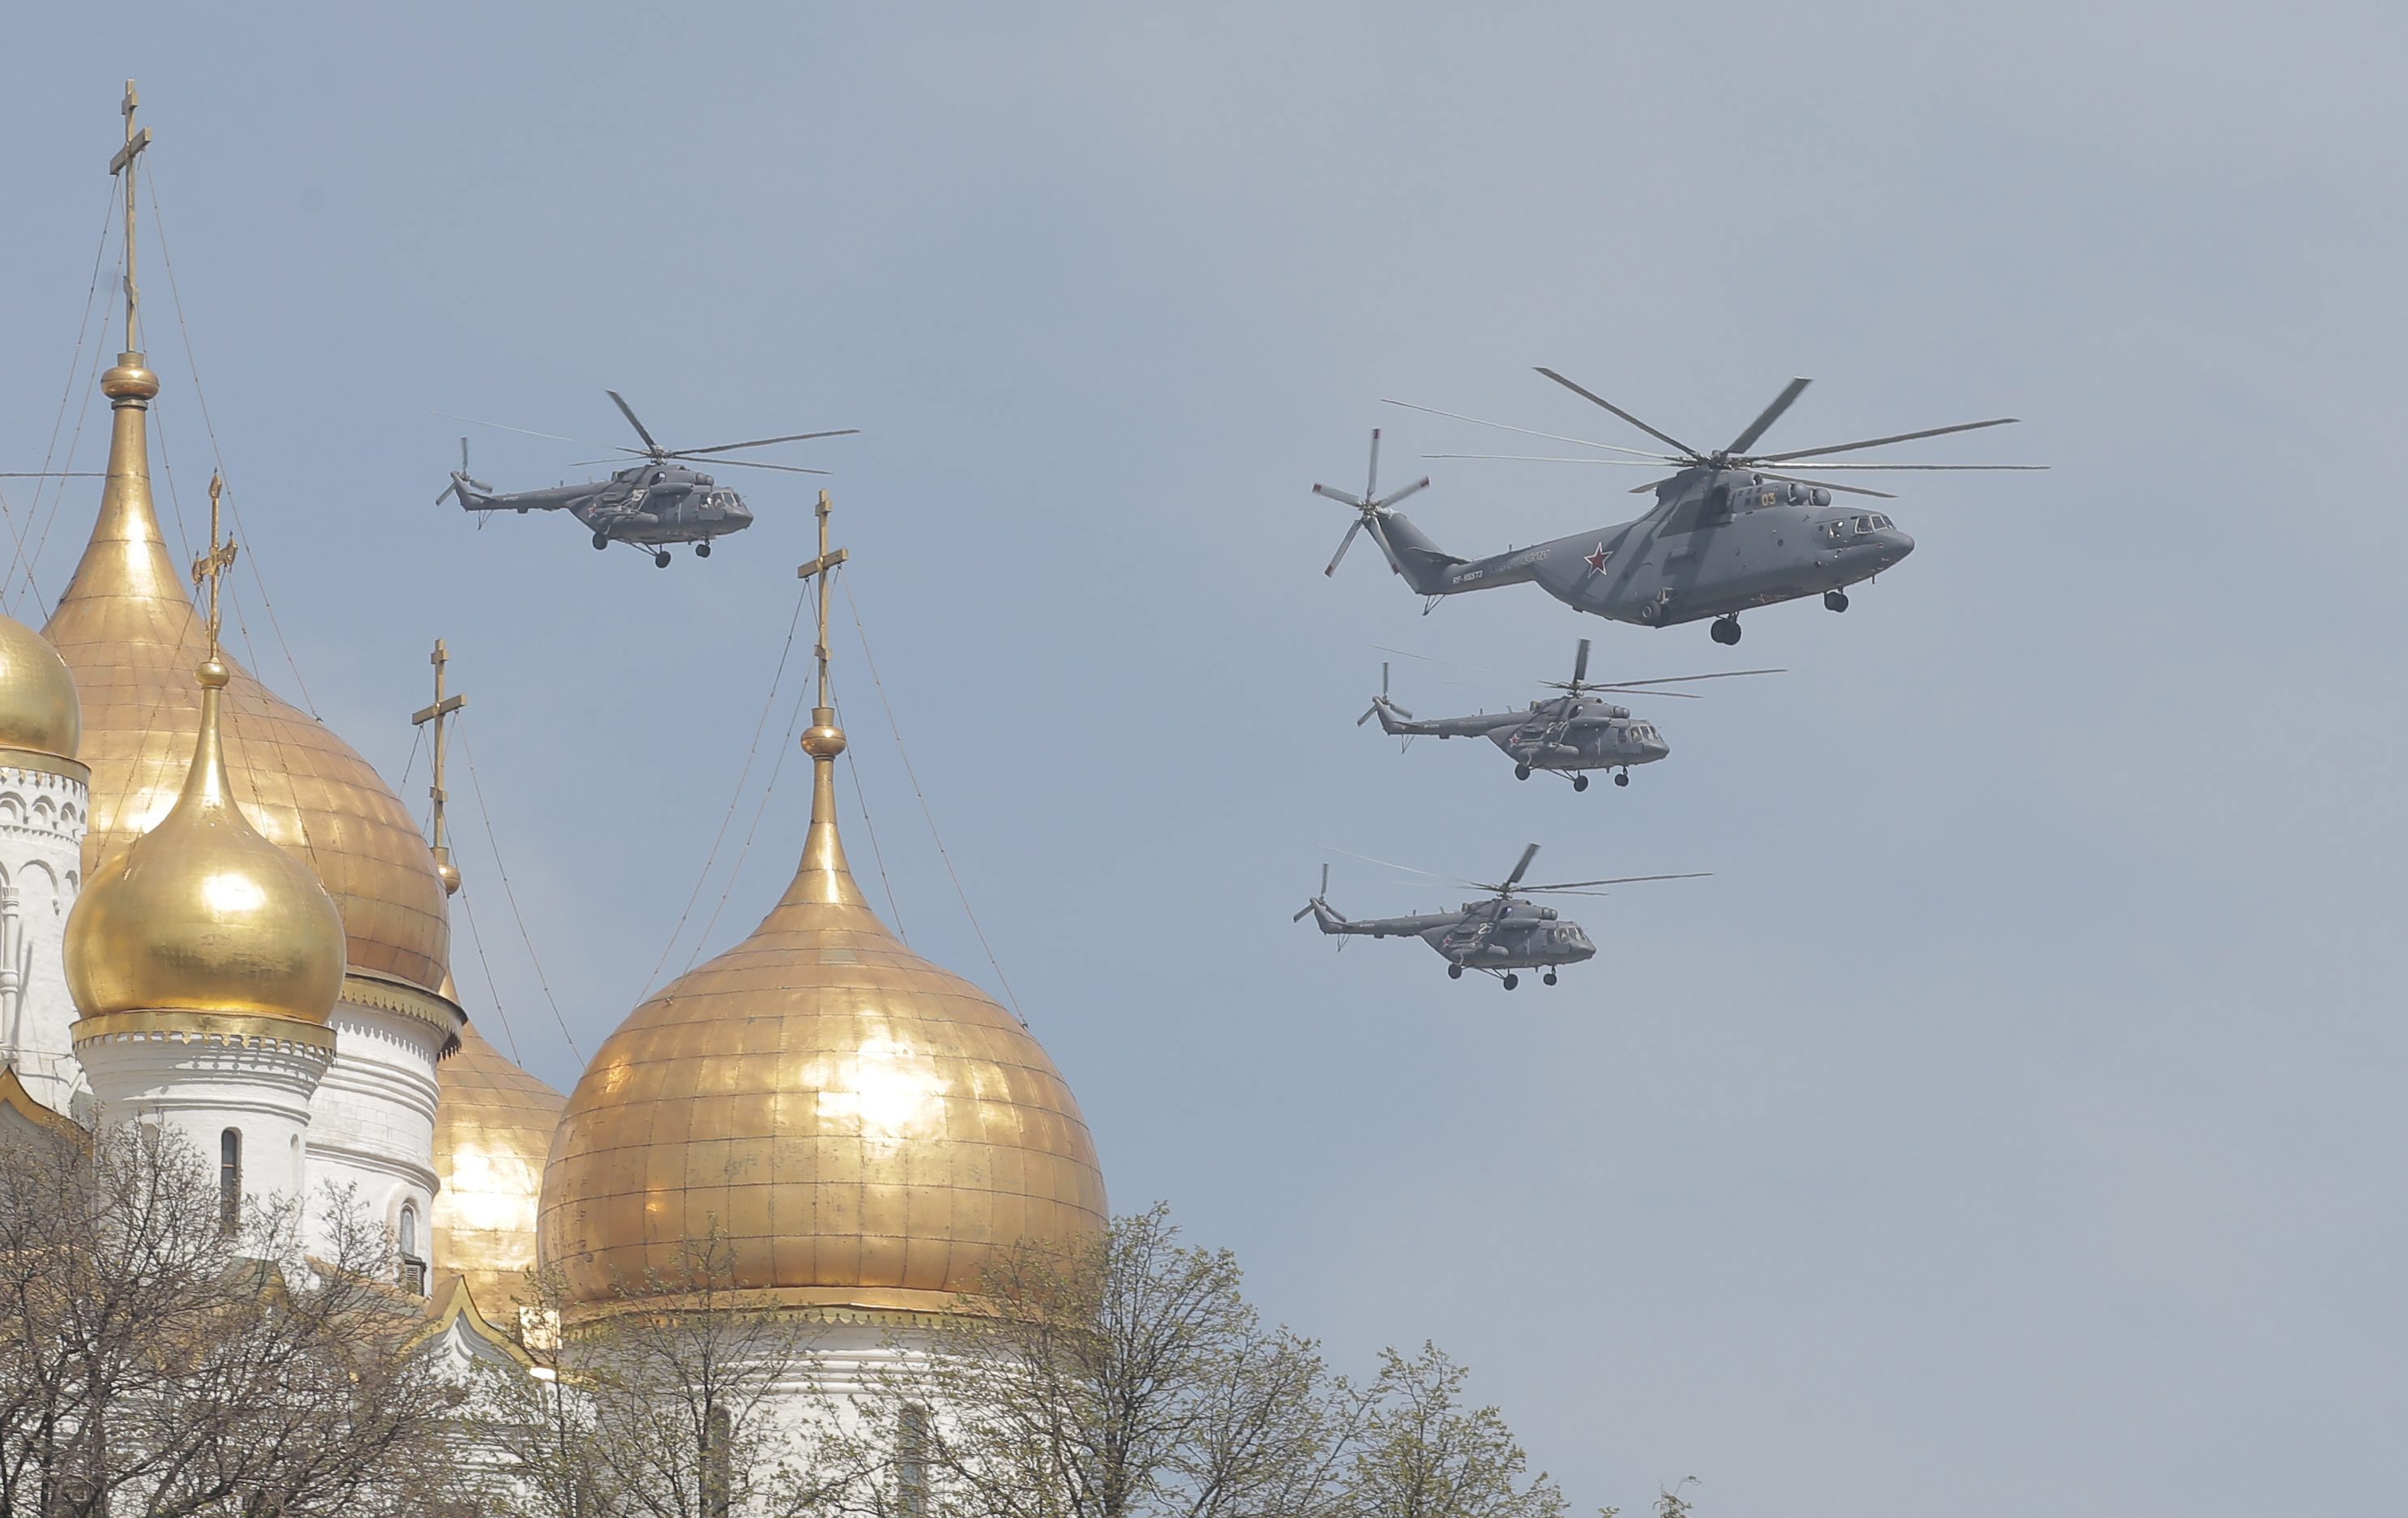 Във въздушната част на Парада на победата участваха над 140 самолети и хеликоптери - два пъти повече от миналата година